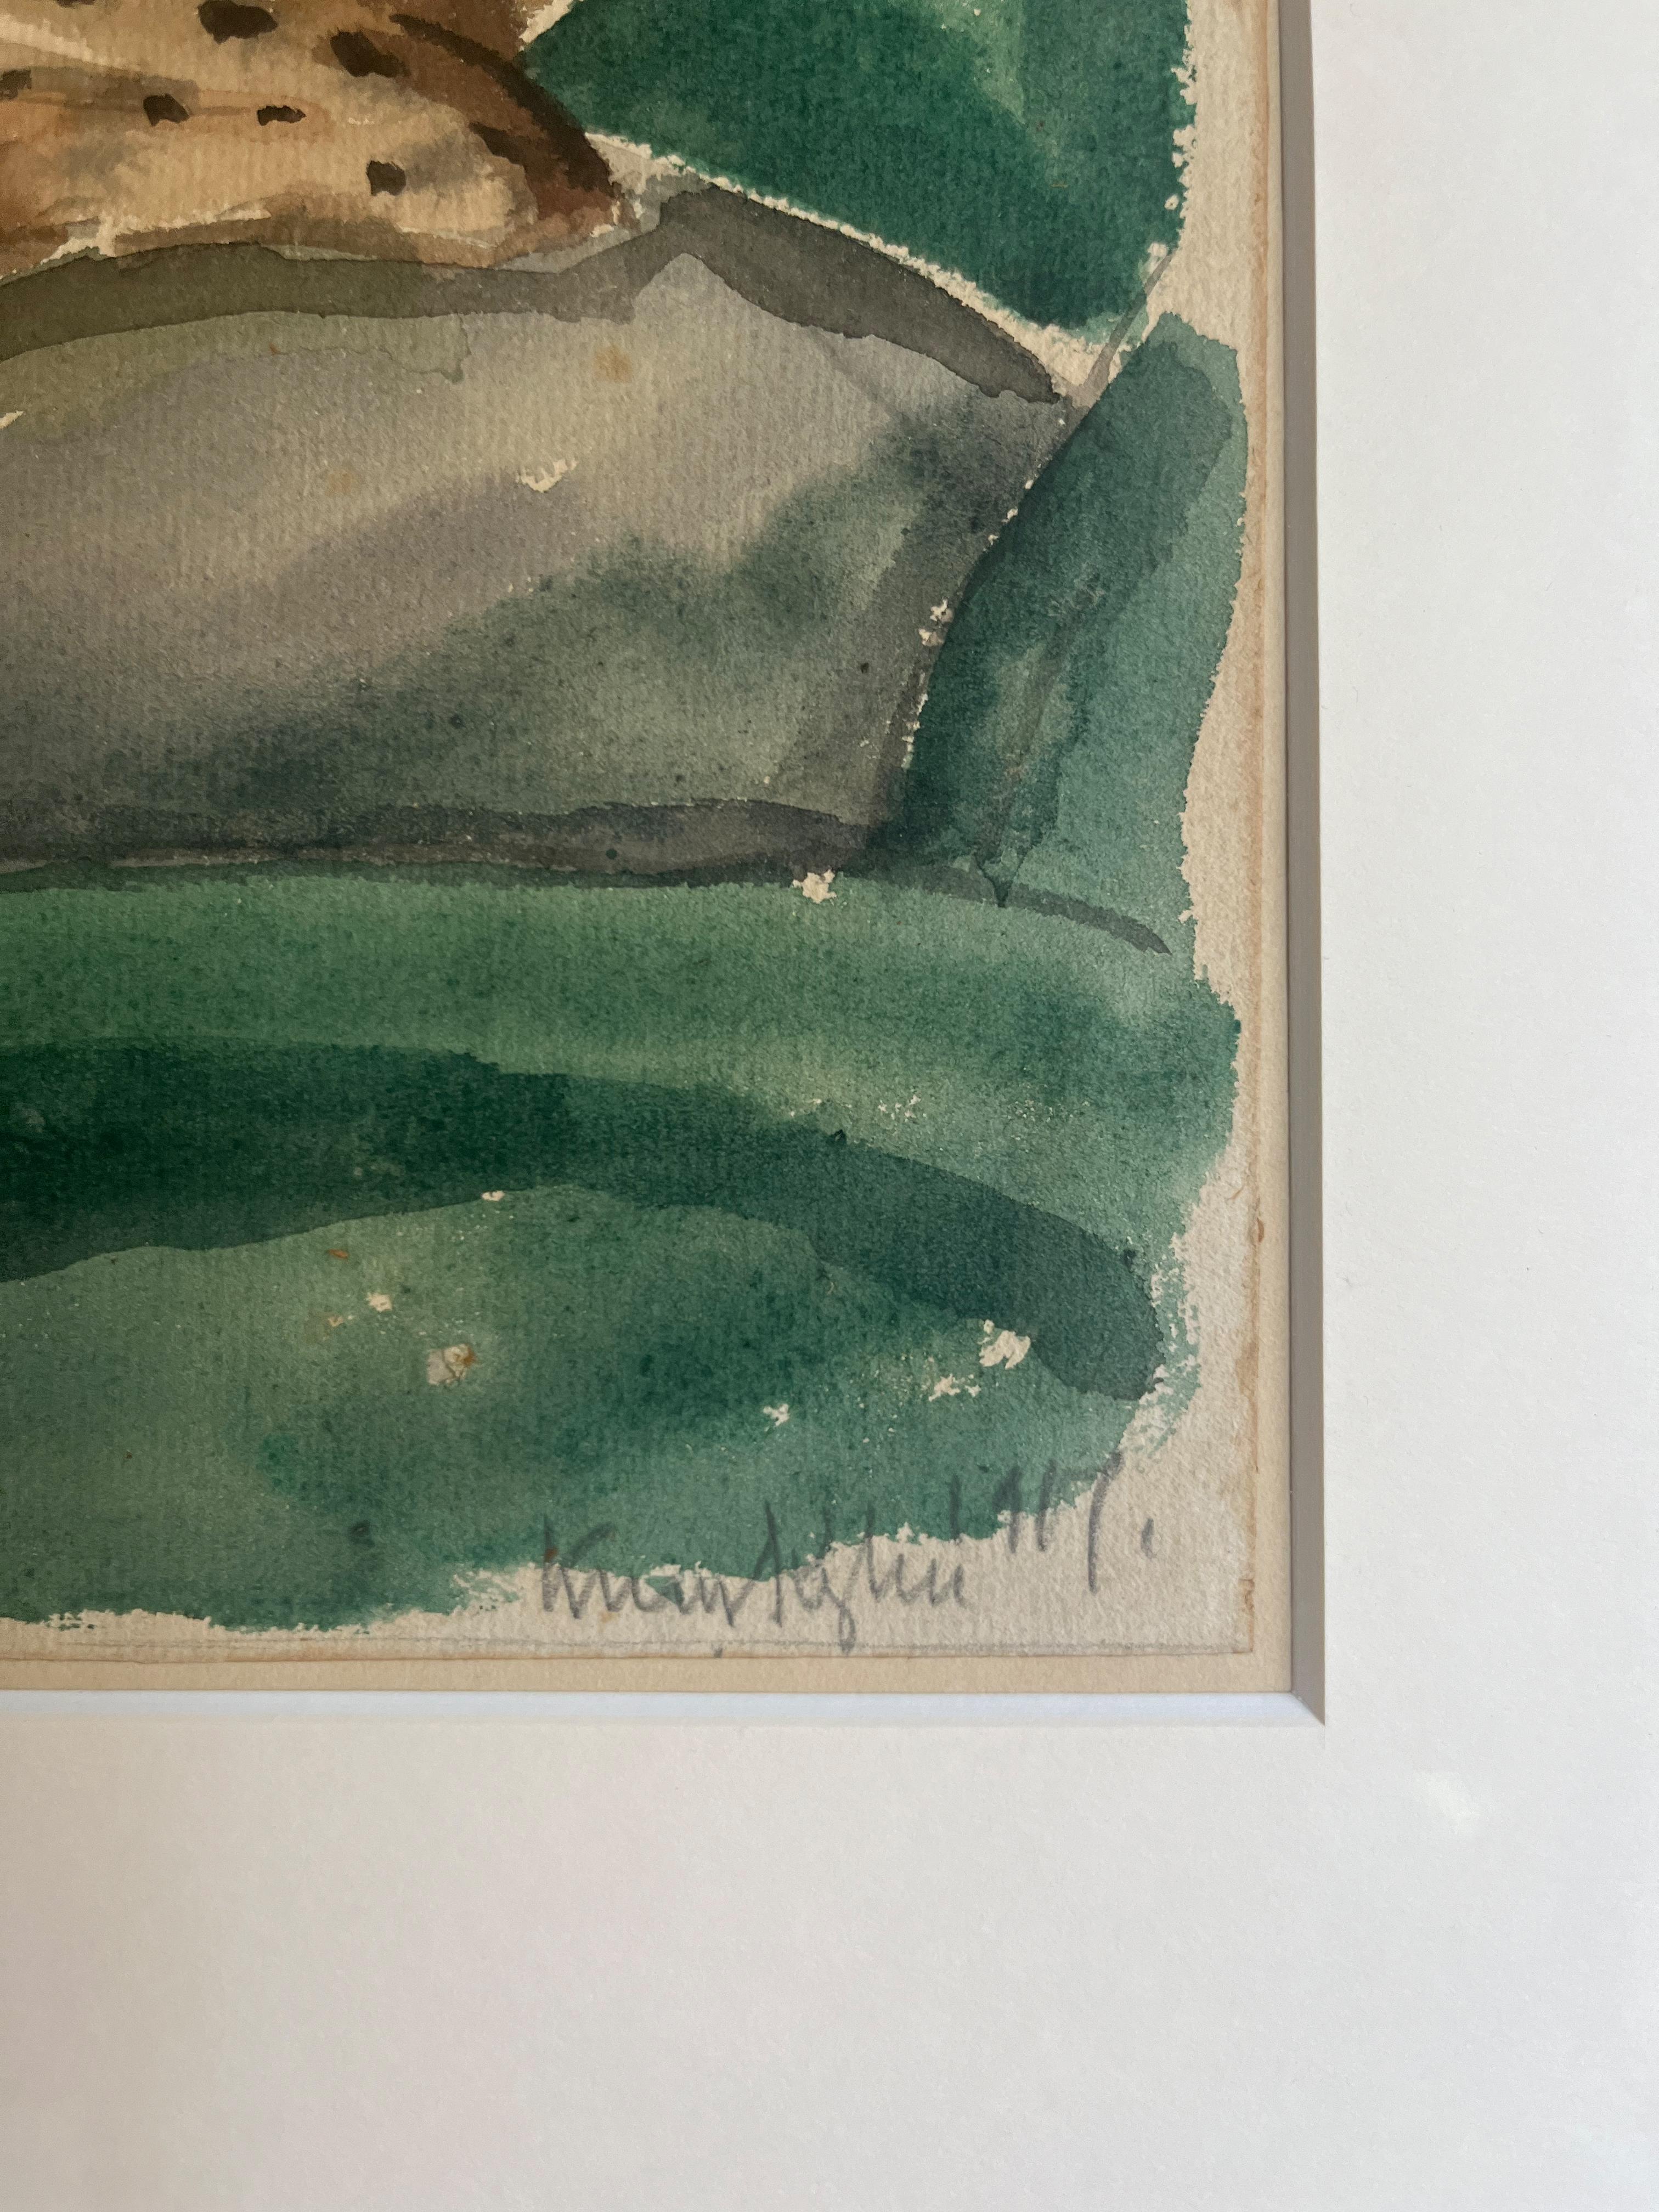 Composition de Knud Kyhn, 1917
Aquarelle sur papier. Format de la feuille 30×38 cm, signée et encadrée.

Knud Kyhn (1880 - 1969) était un peintre, illustrateur et sculpteur en céramique danois, particulièrement connu pour ses figurines d'animaux,